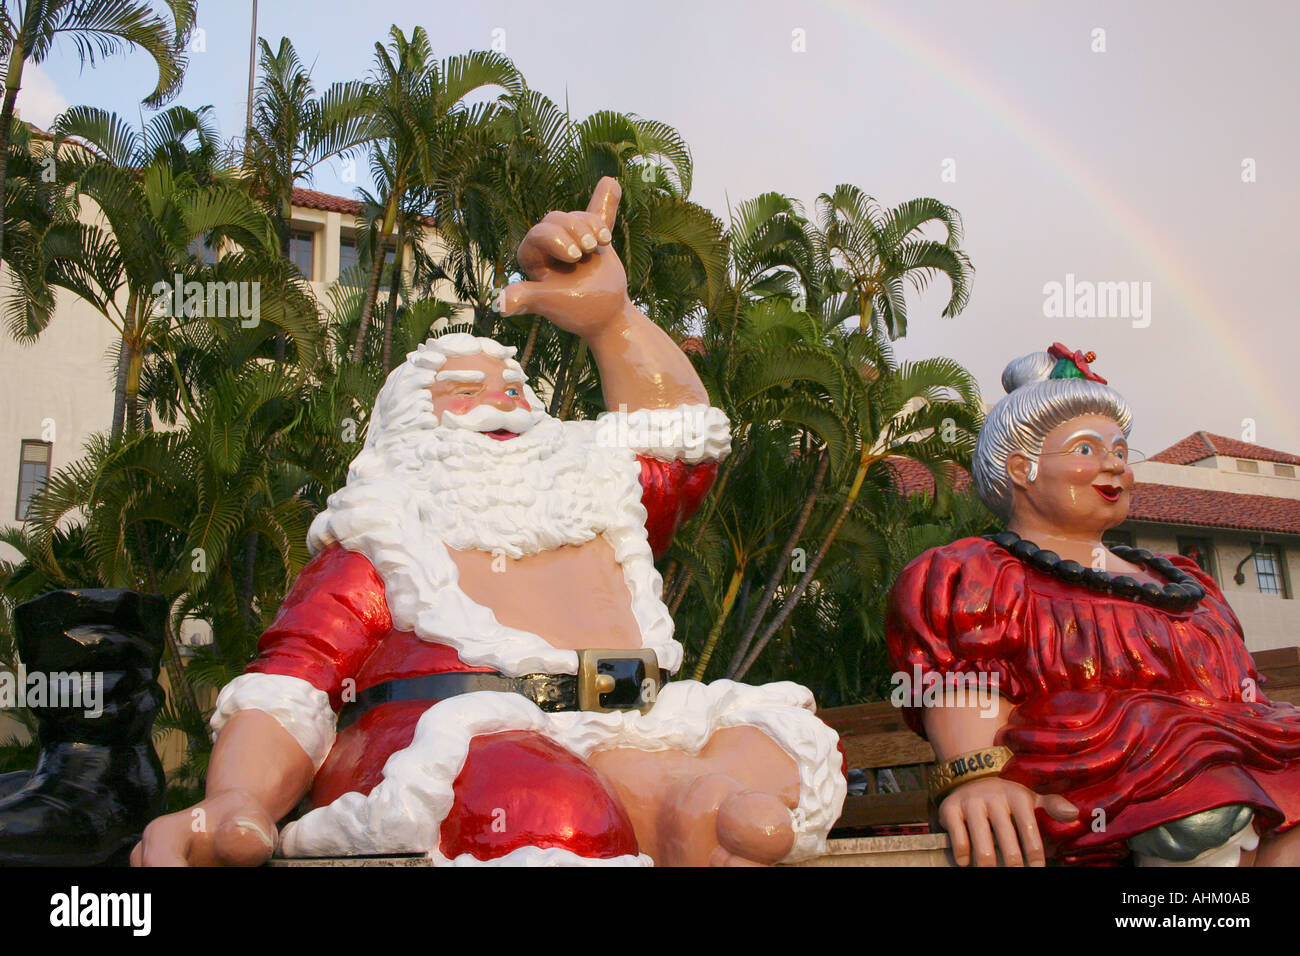 Père Noël hawaïen et Mme Claus au sommet d'une fontaine avec rainbow à Honolulu Hawaii Banque D'Images